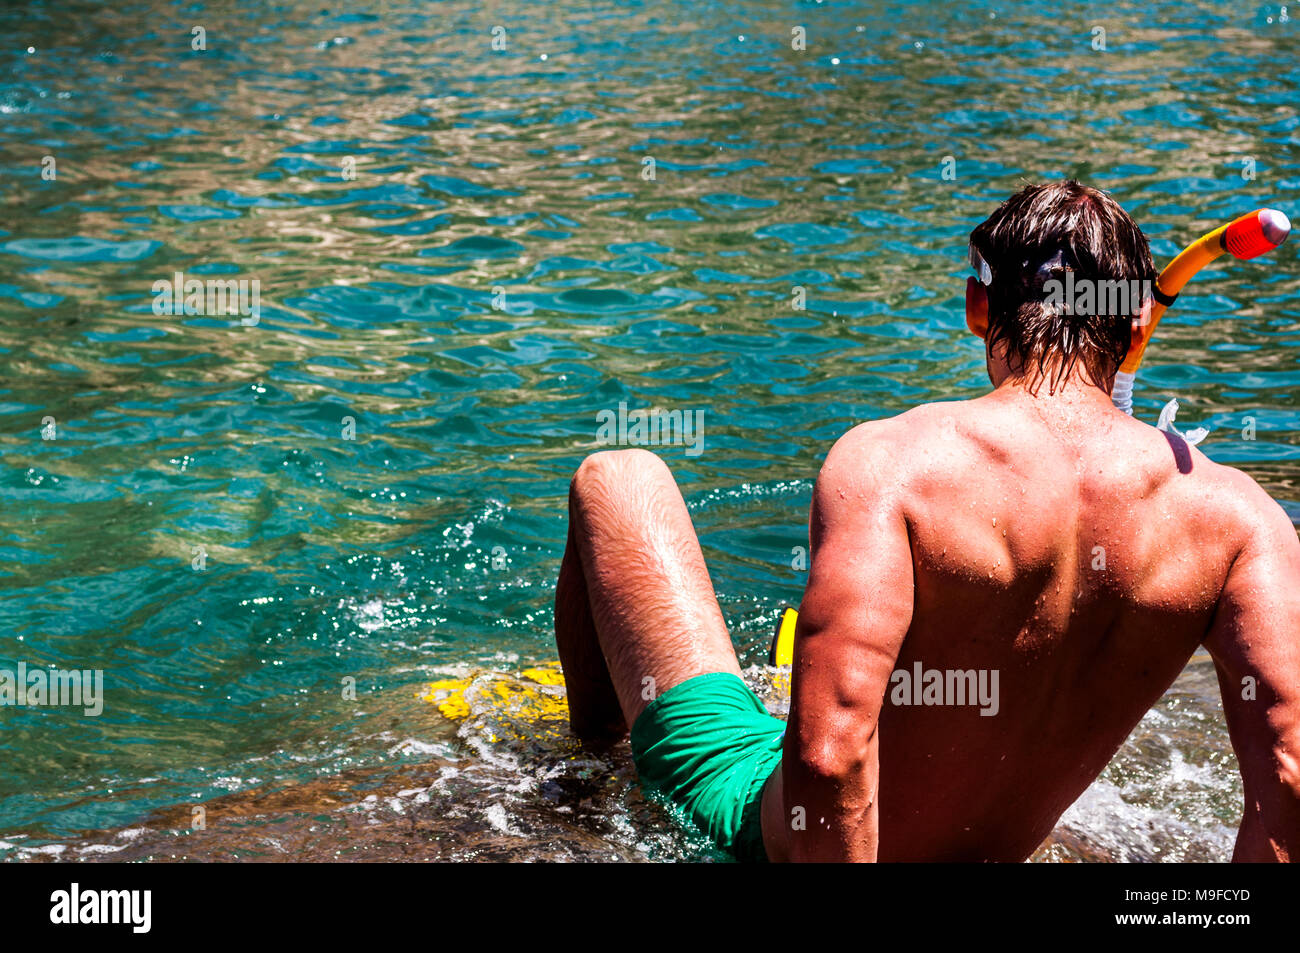 Hombre de buceo en aguas tropicales. El hombre prepara para bucear con su equipo de snorkeling Foto de stock